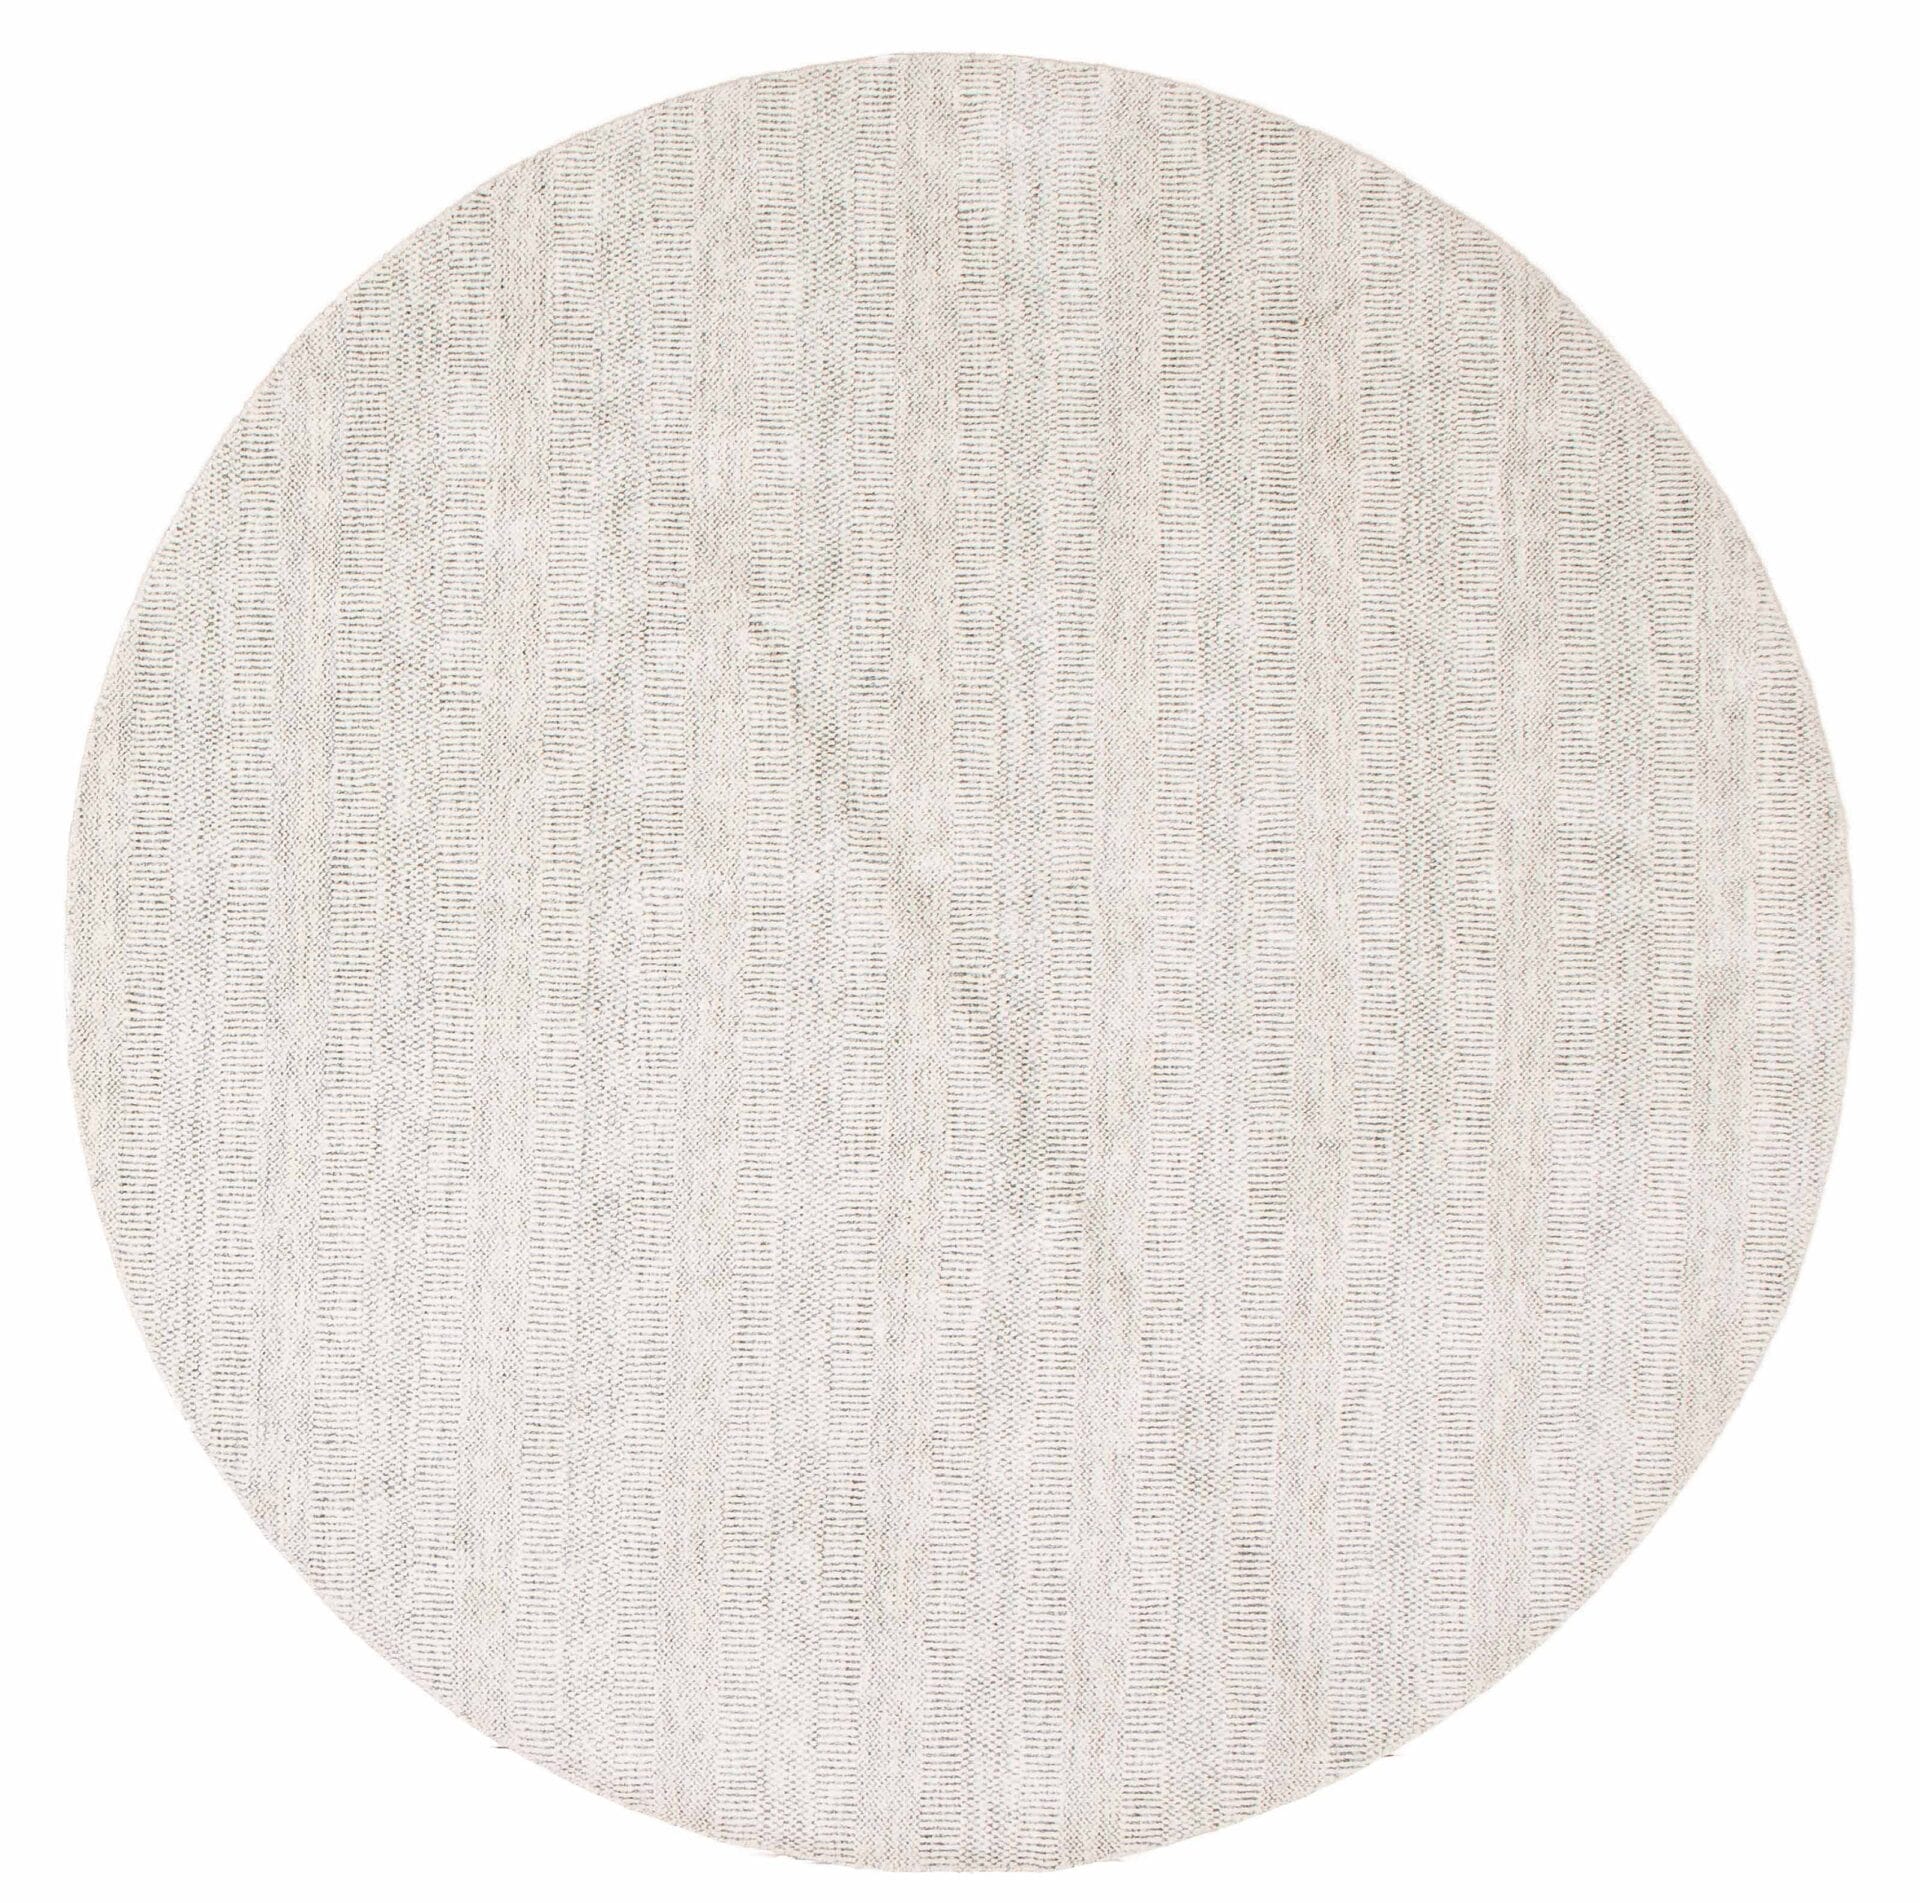 Beschrijving: Een wit rond tapijt op een witte achtergrond.